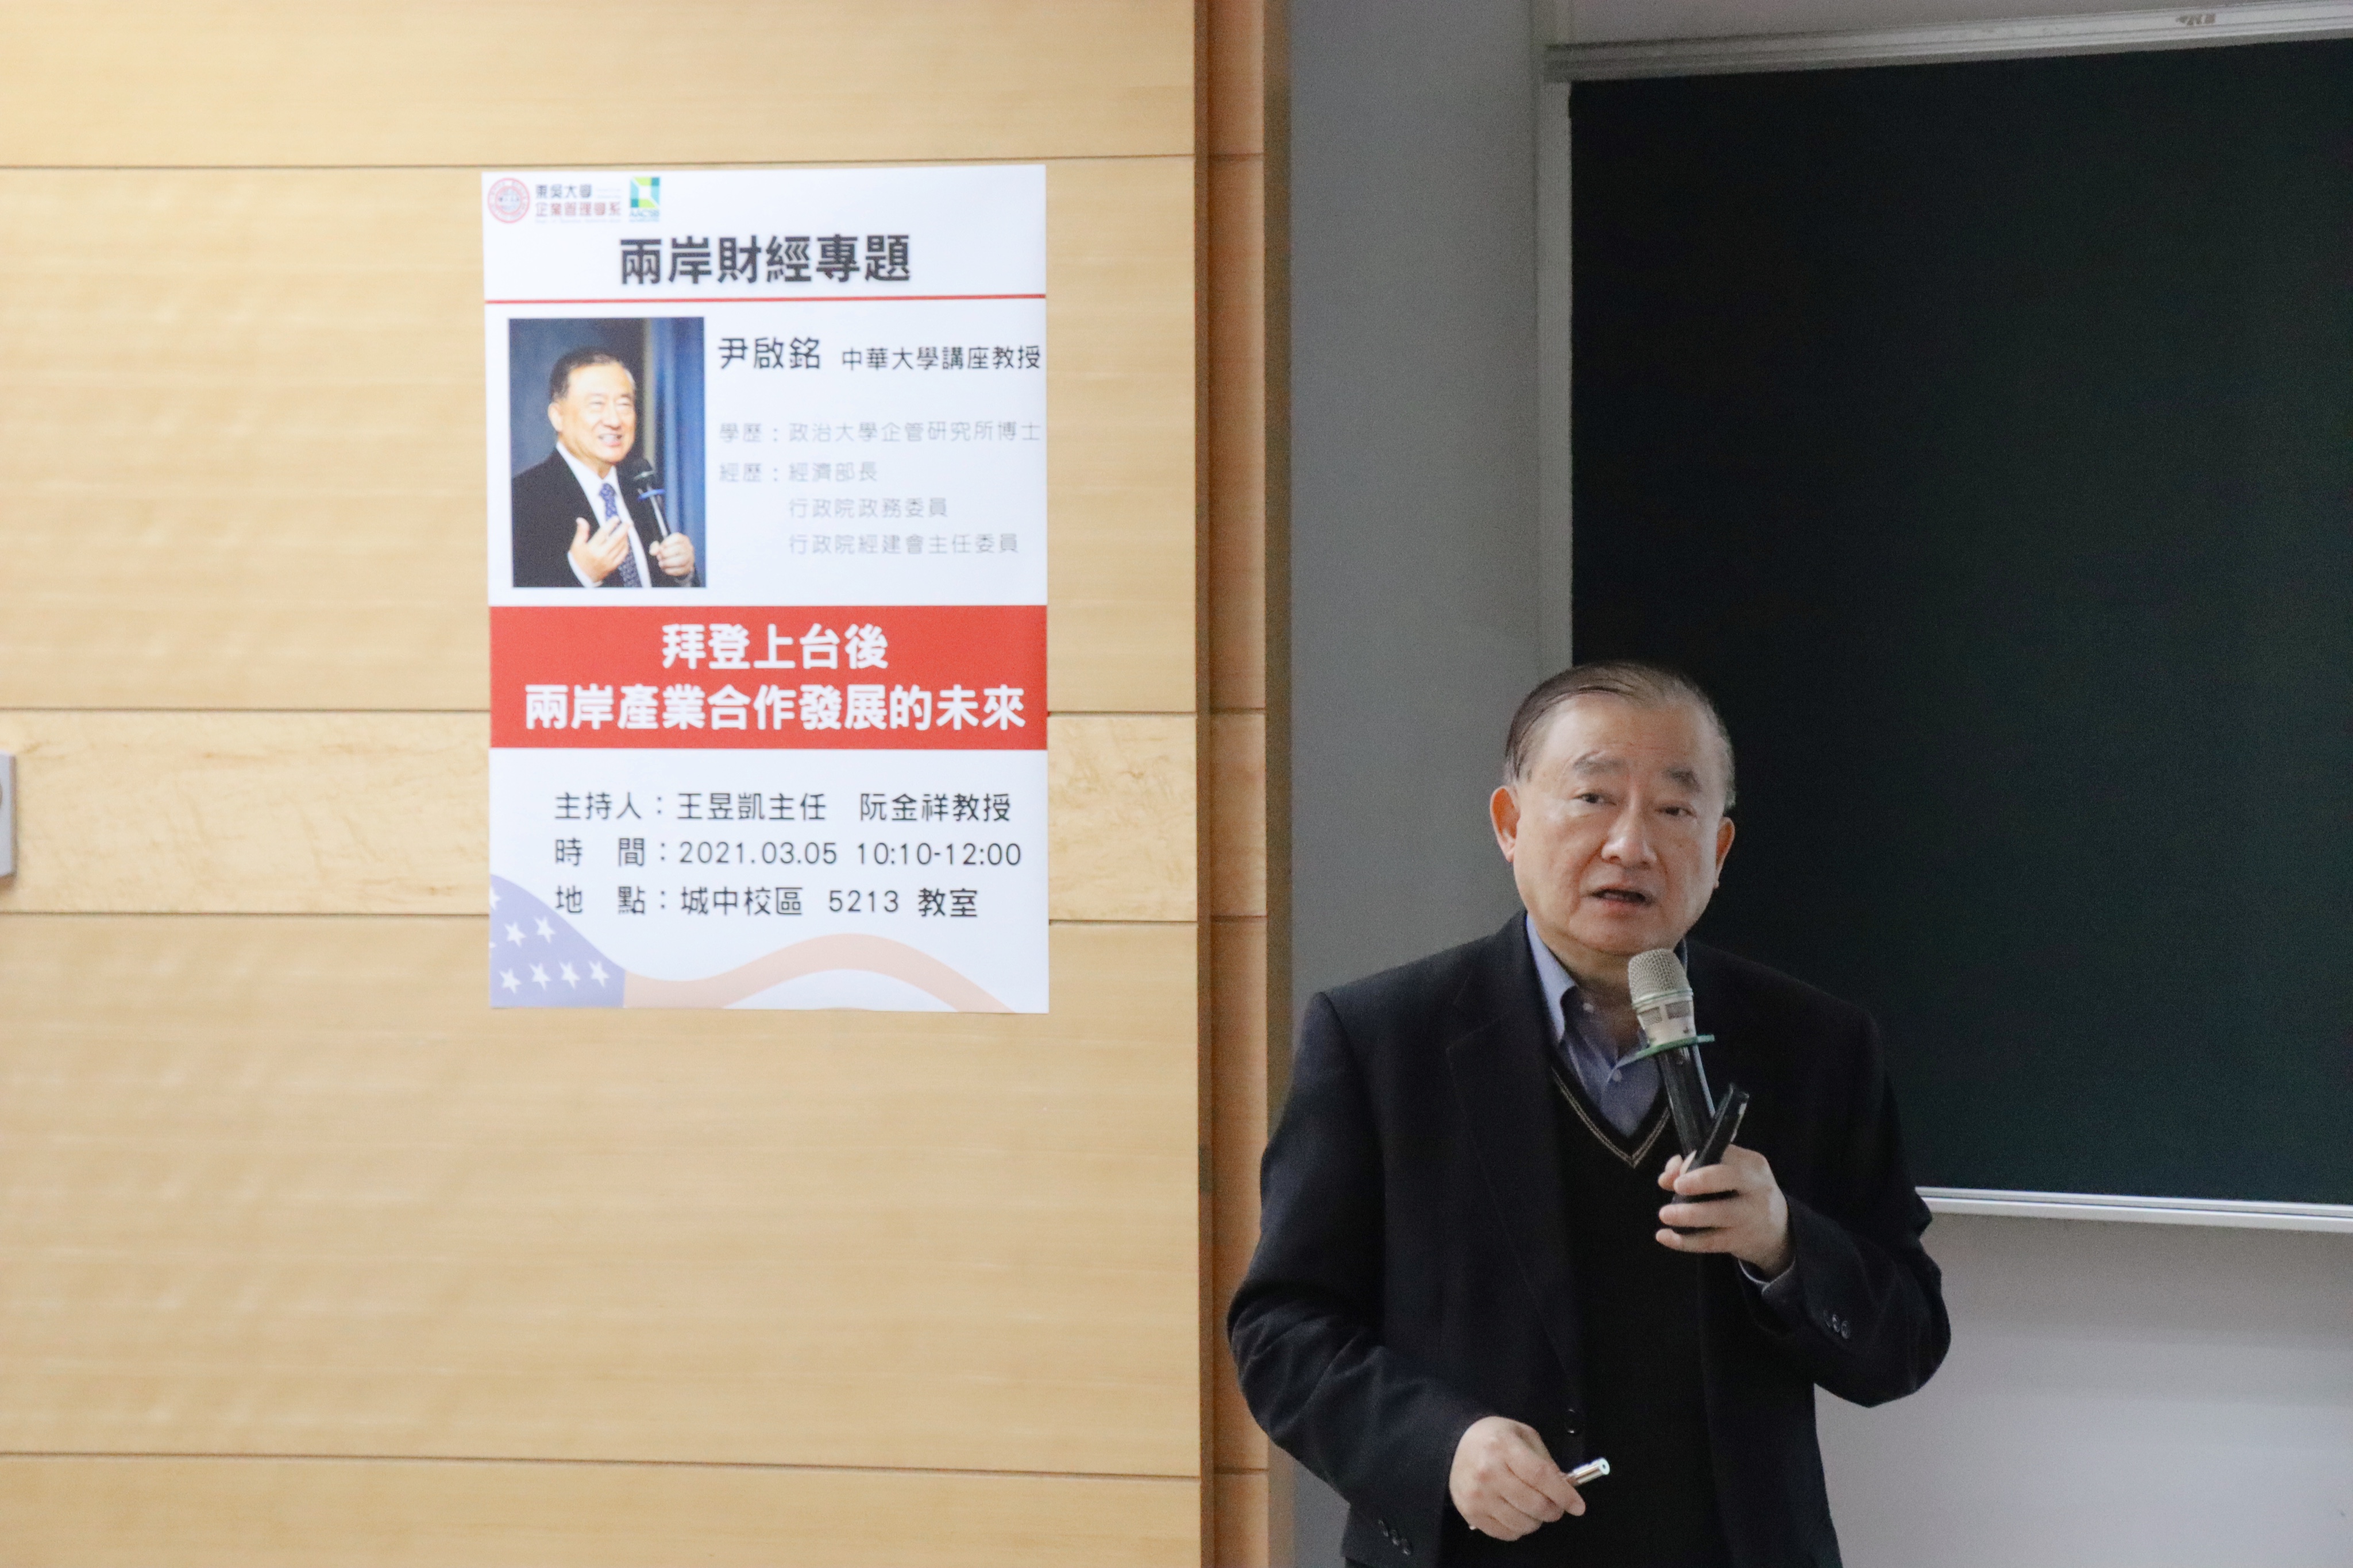 有幸邀請到前經濟部部長尹啟銘至東吳企管進行專題演講